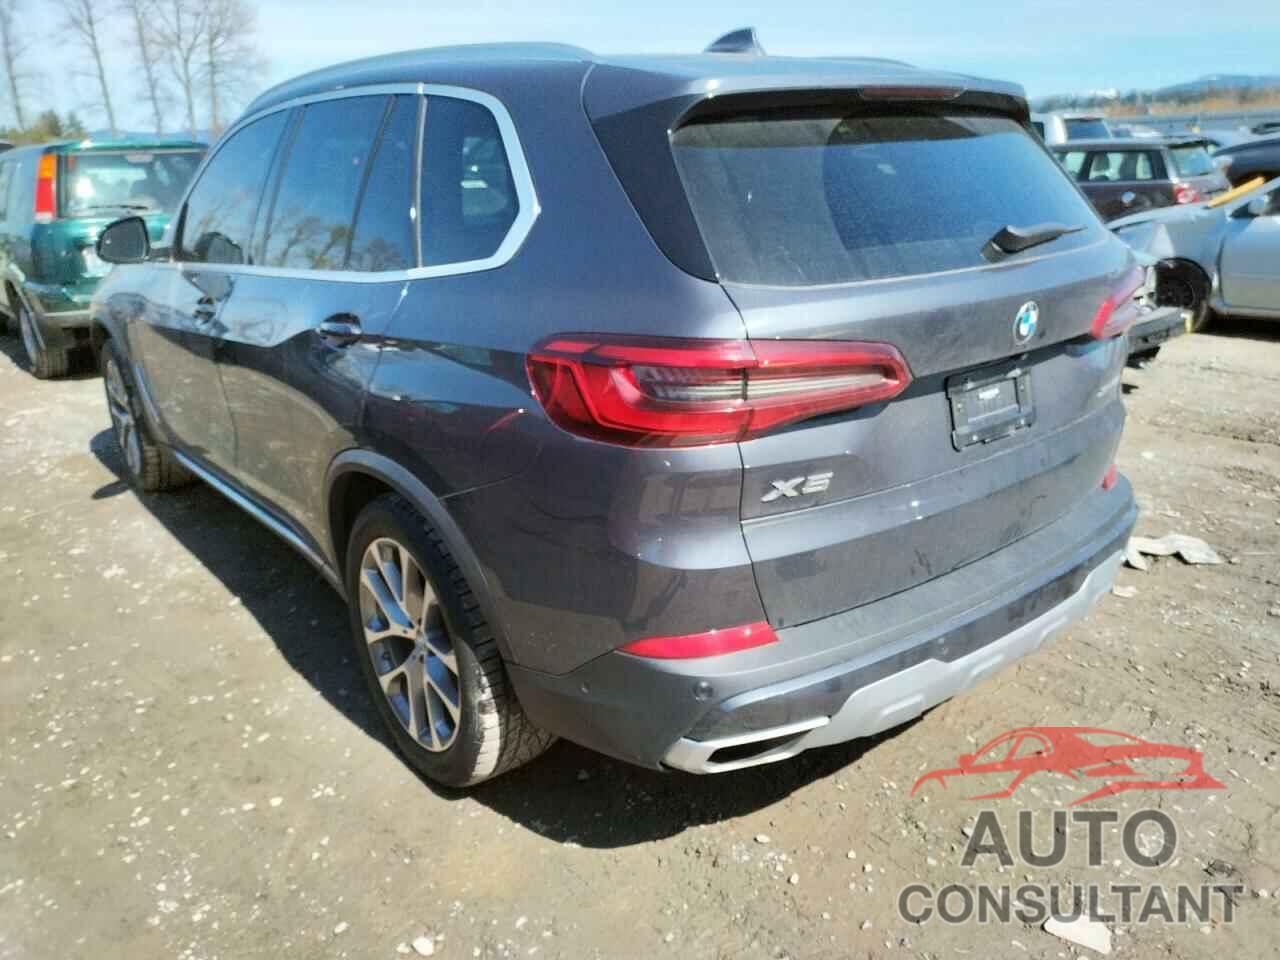 BMW X5 2019 - 5UXCR6C56KLK84280